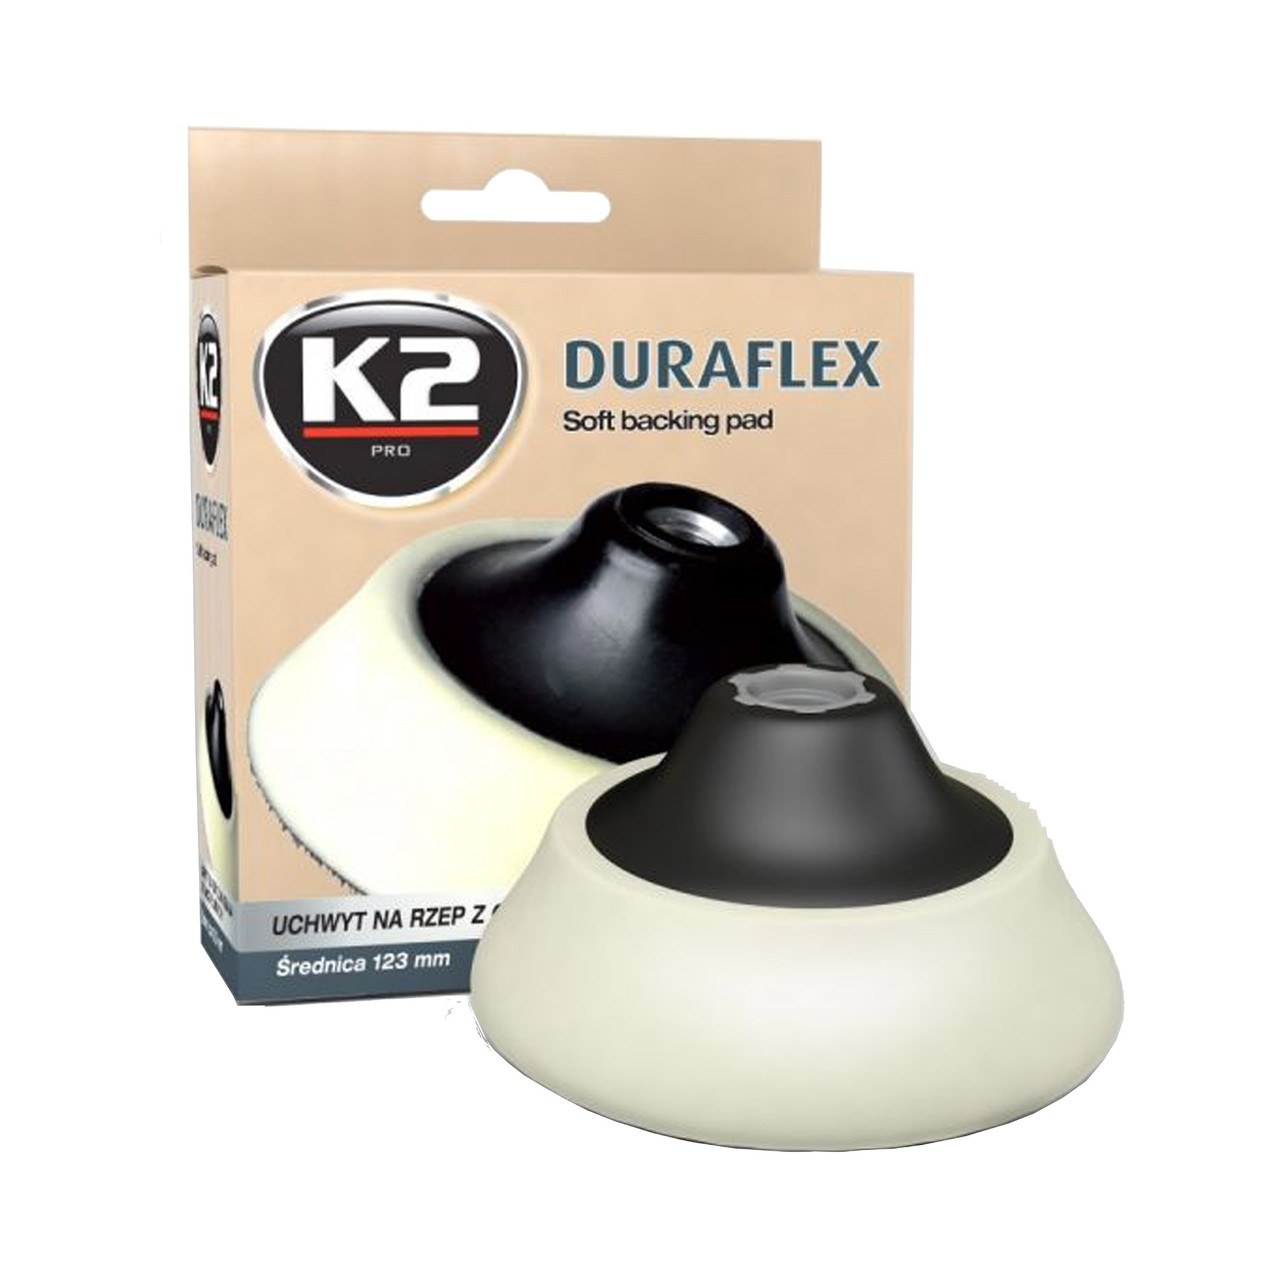 DURAFLEX Soft backing pad М14 - Держатель для полировальных кругов | K2